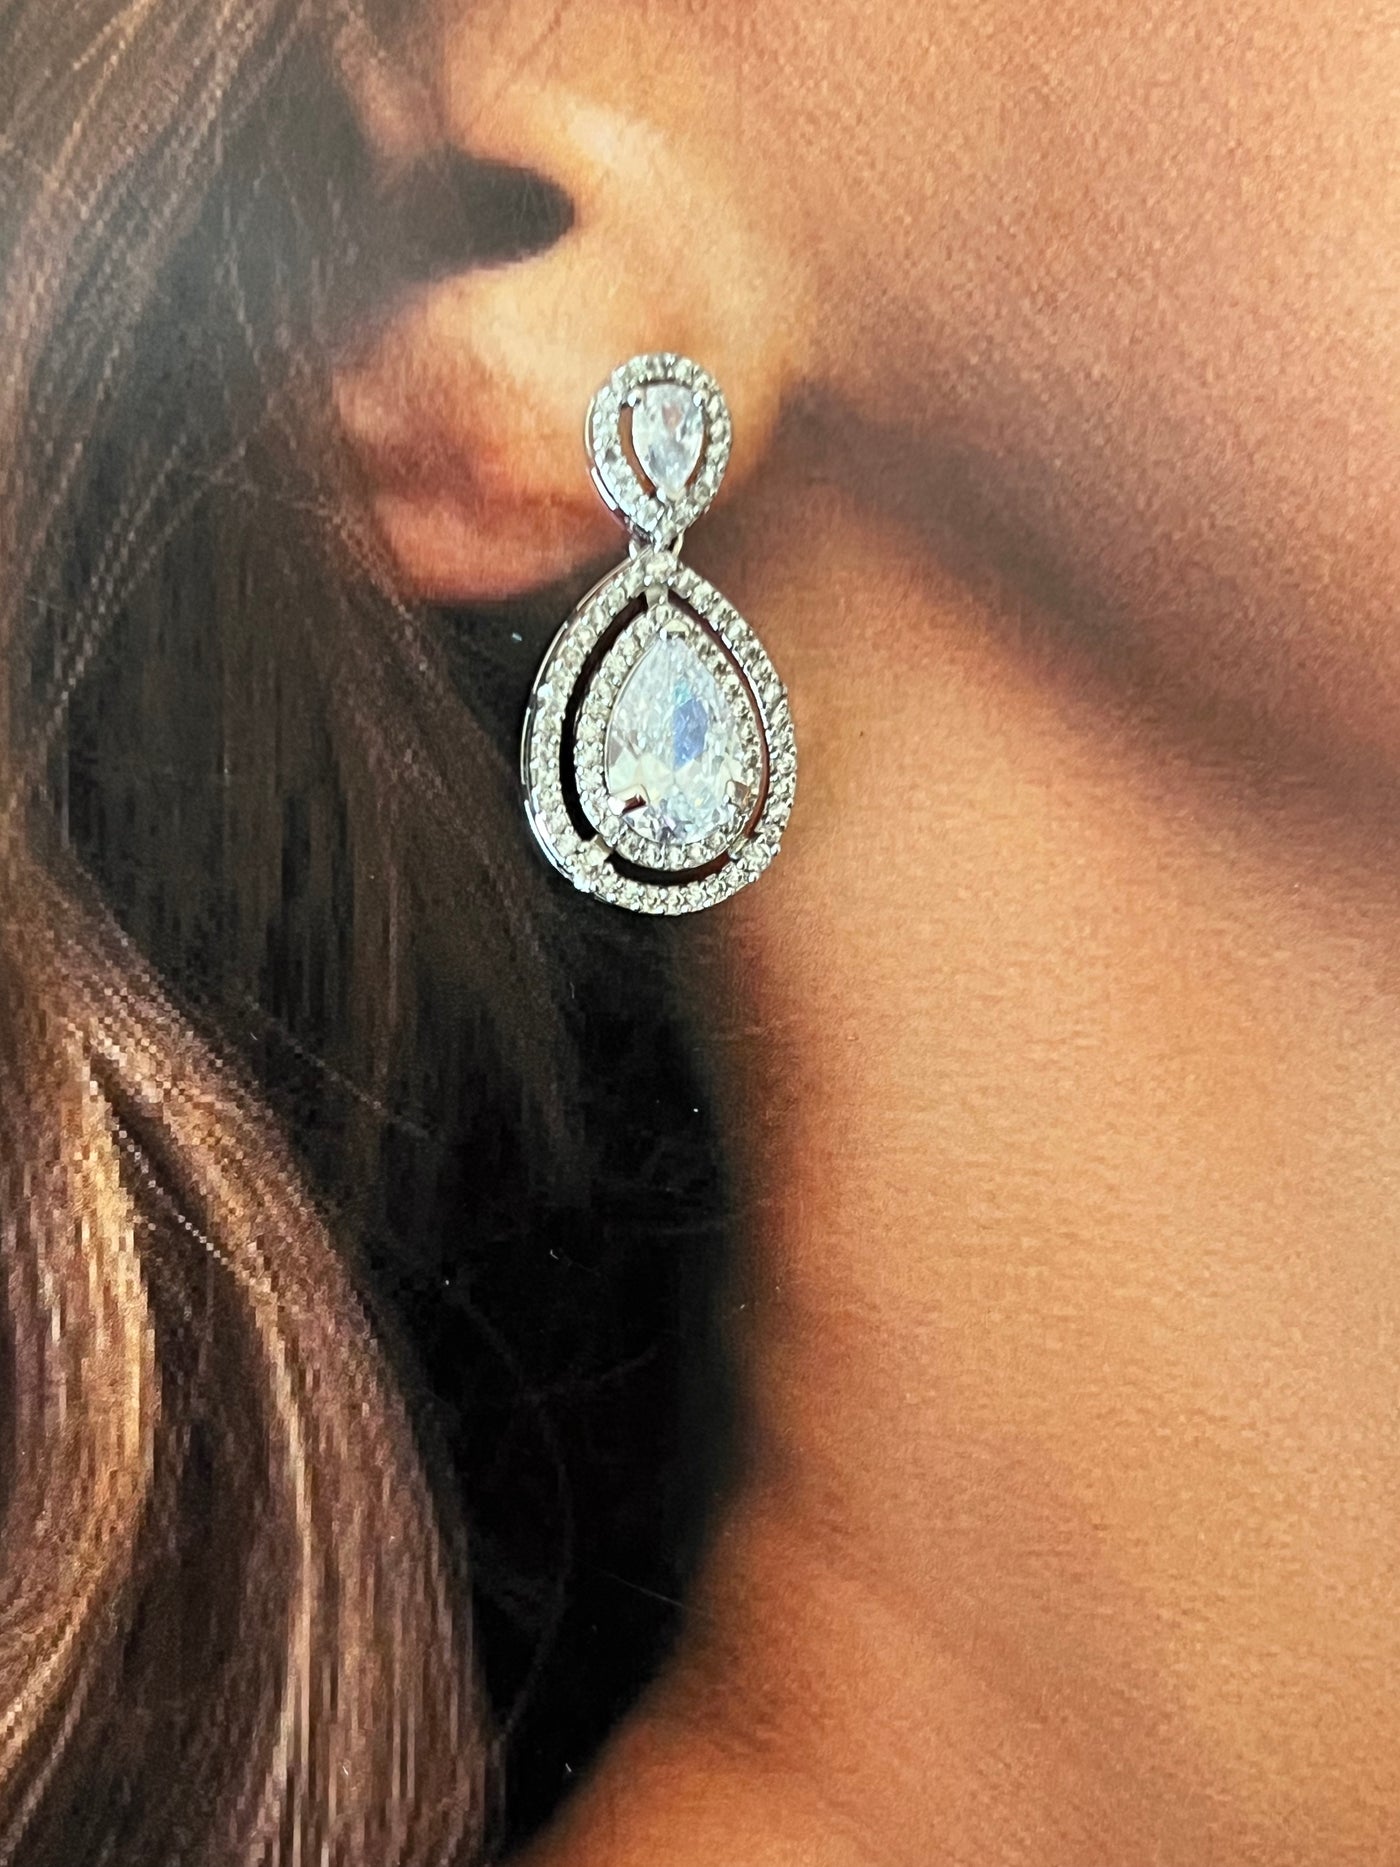 DESTINEE Swarovski Crystals Earrings, Earrings